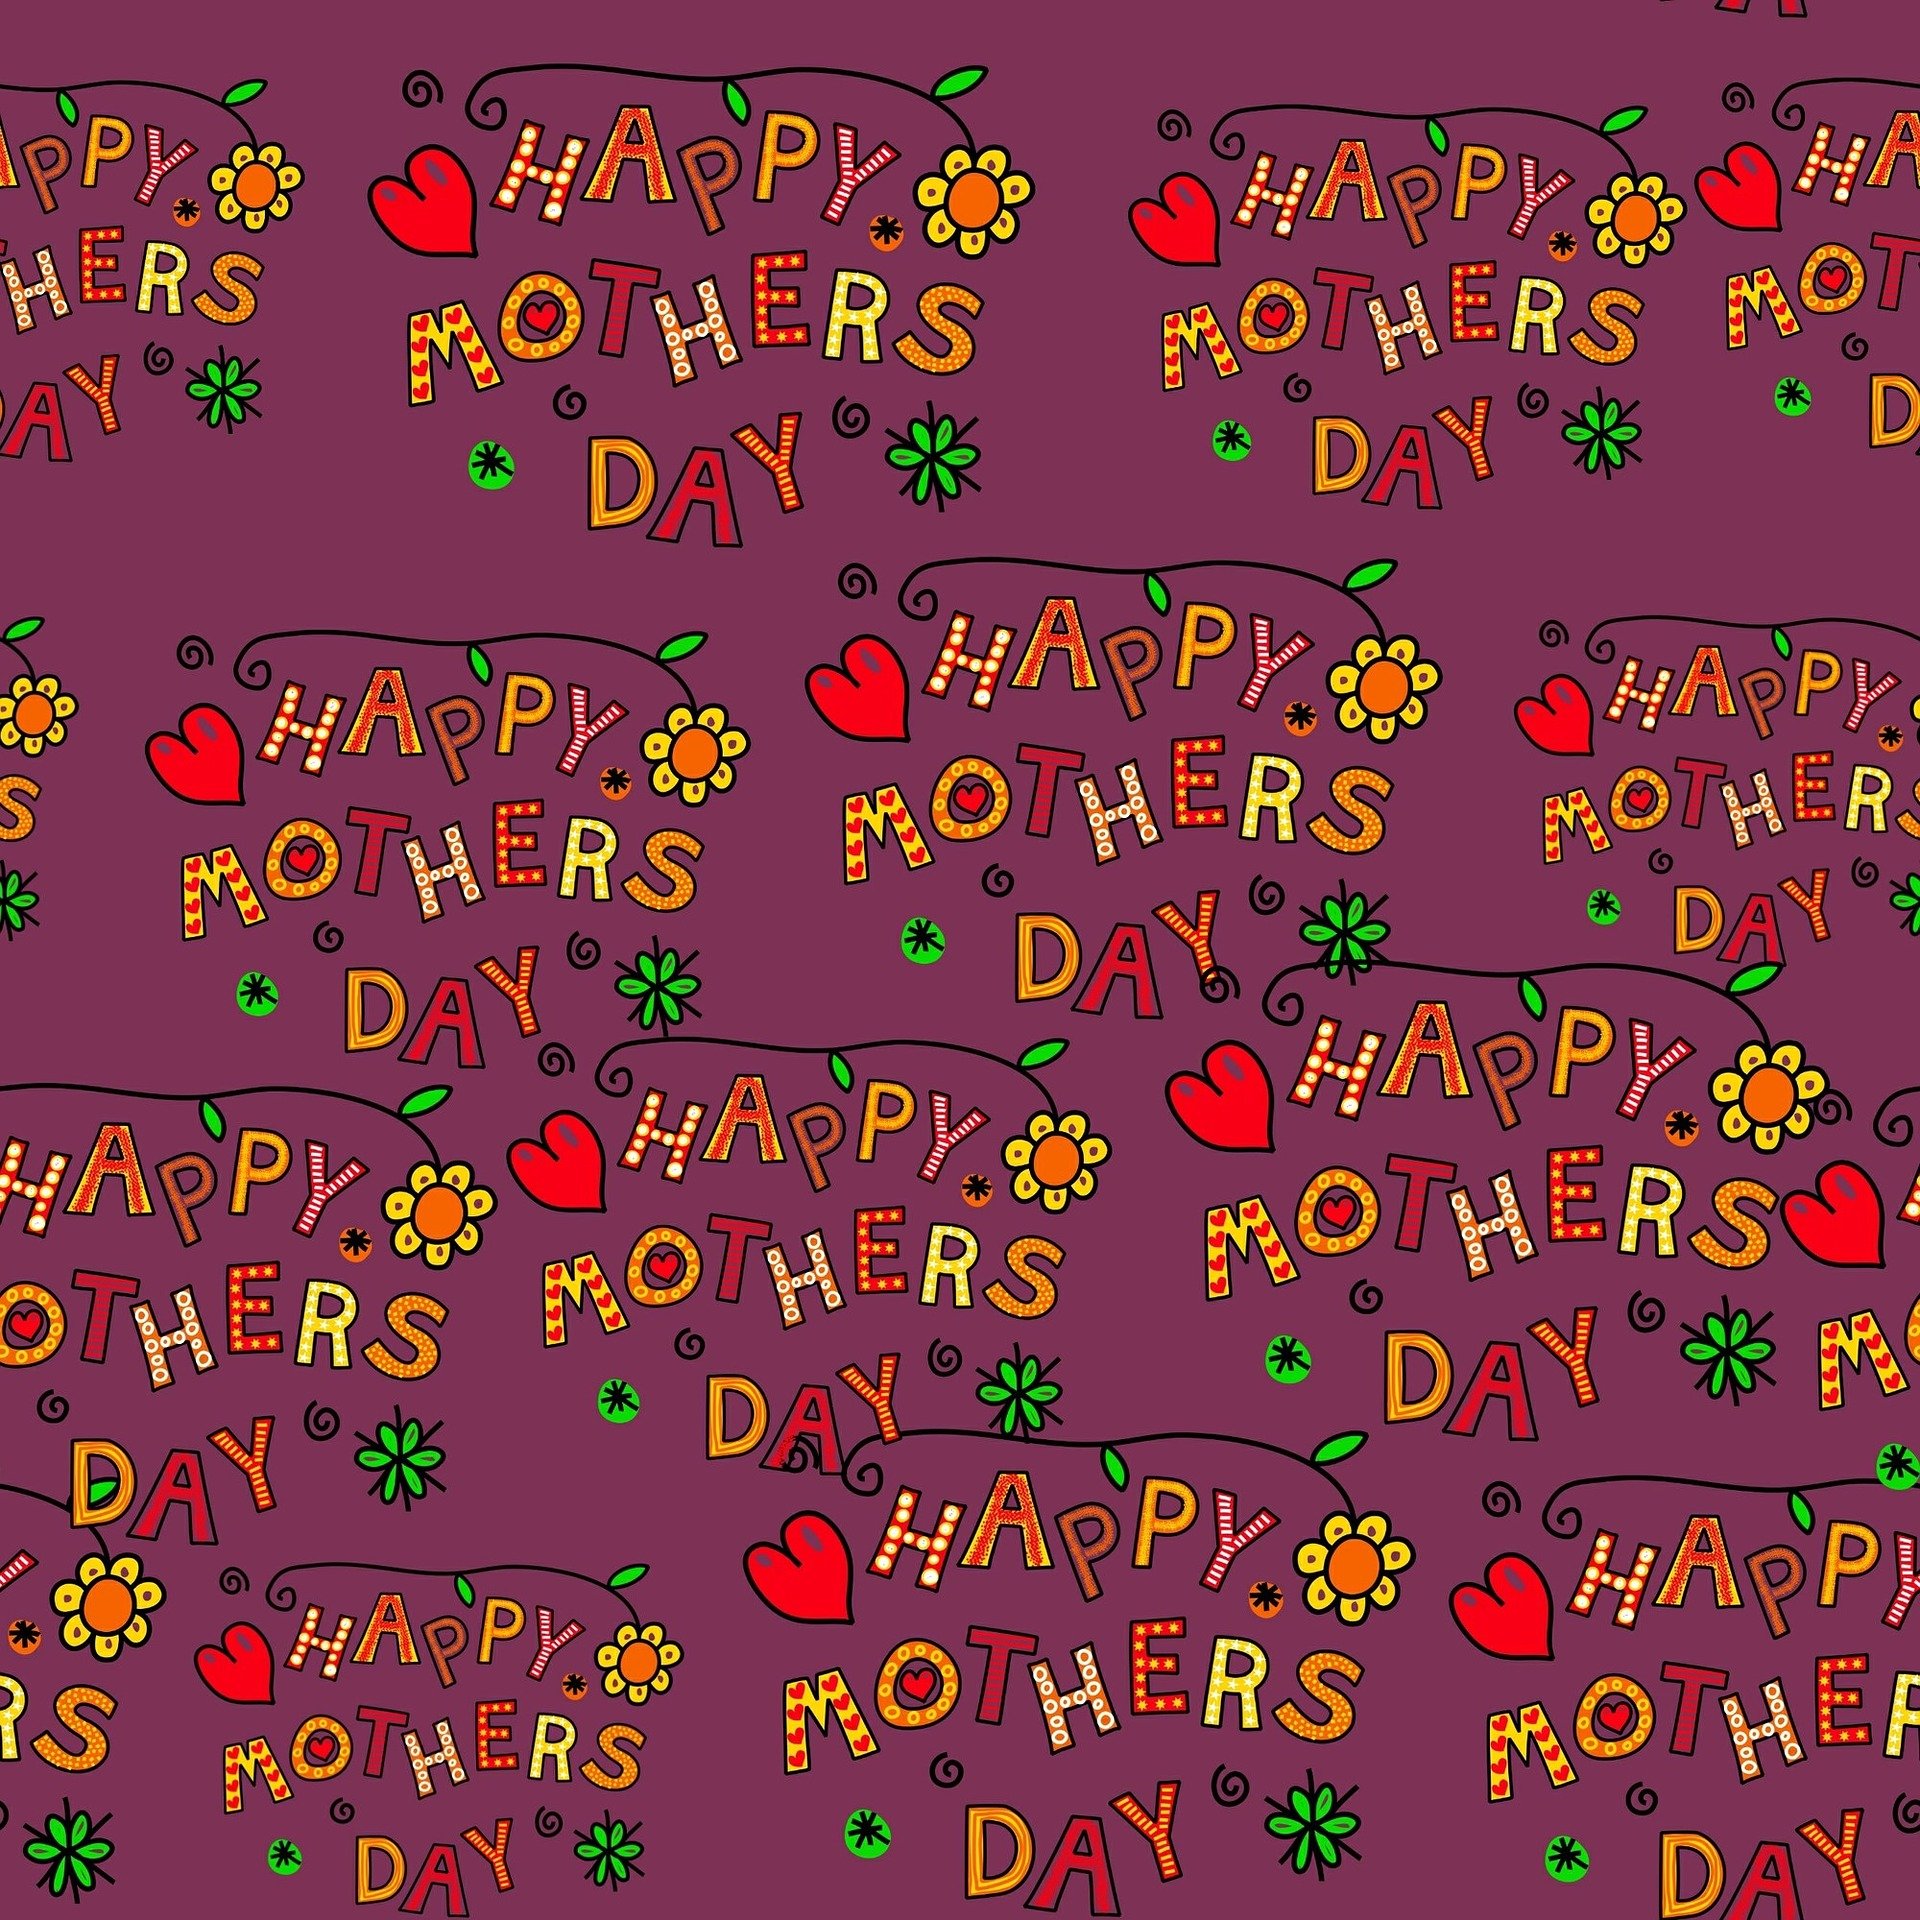 Muttertagskarte (23)